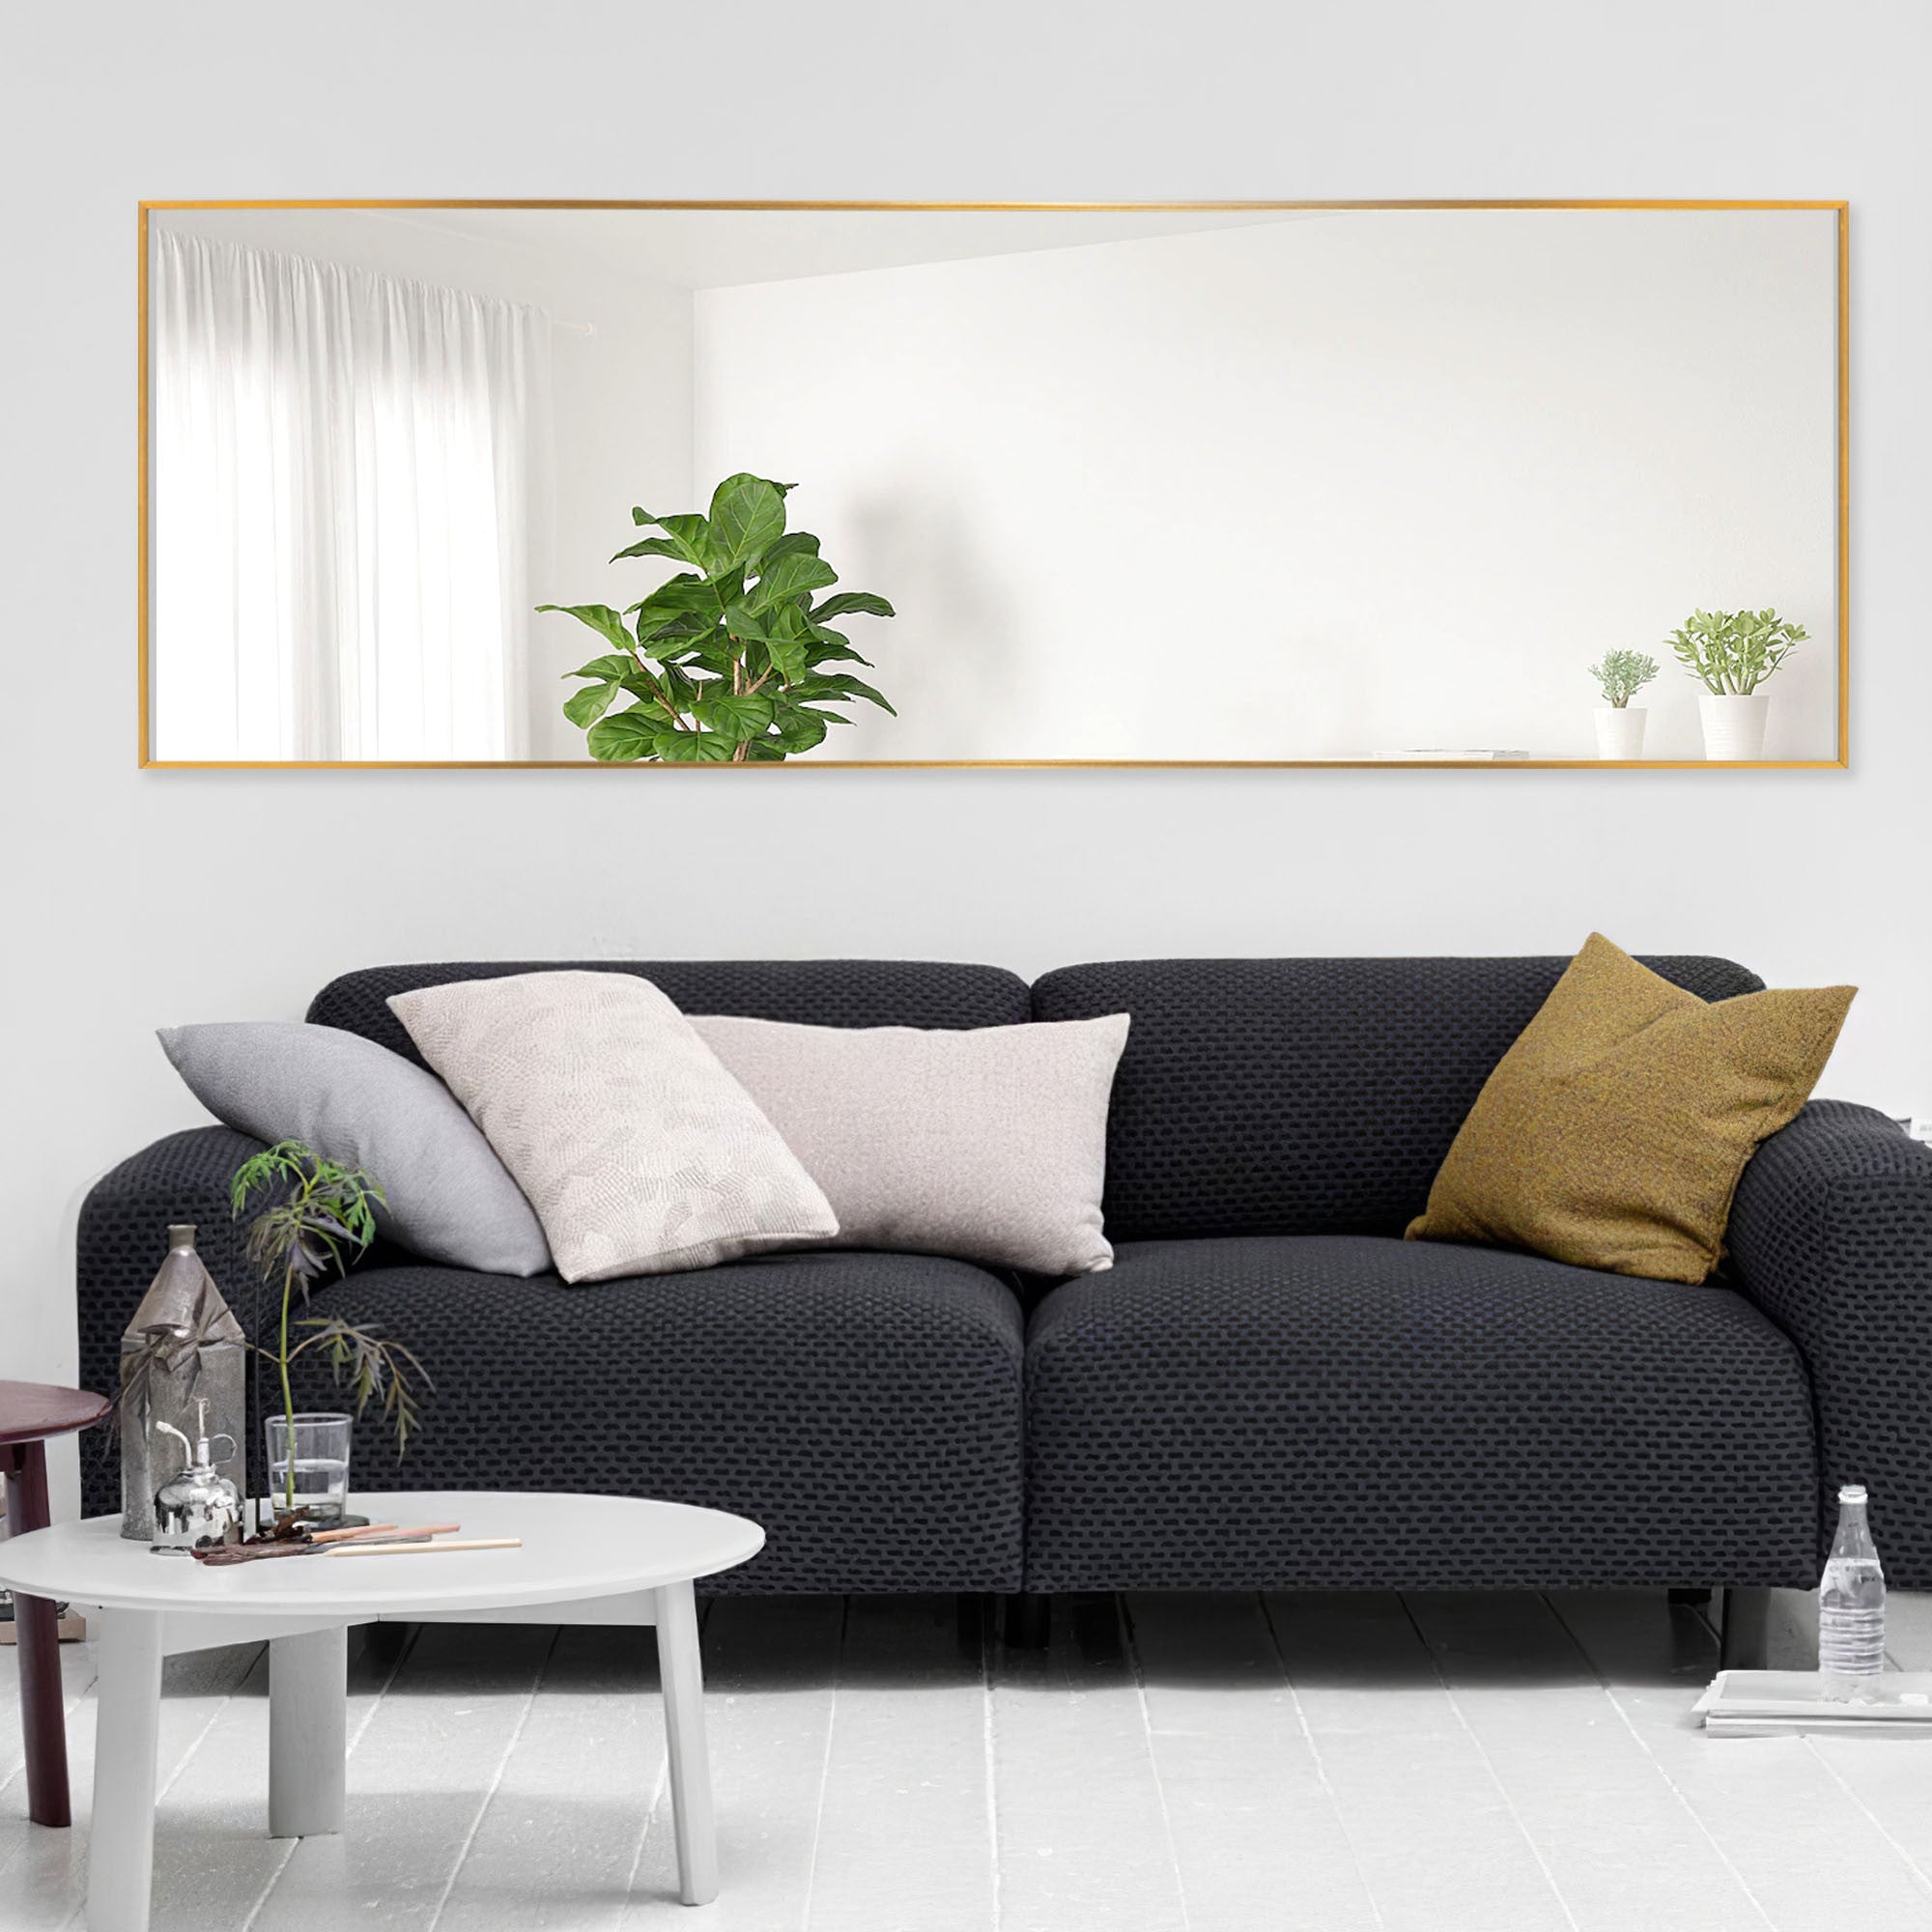 64" Sleek Gold Frame Full Length Mirror